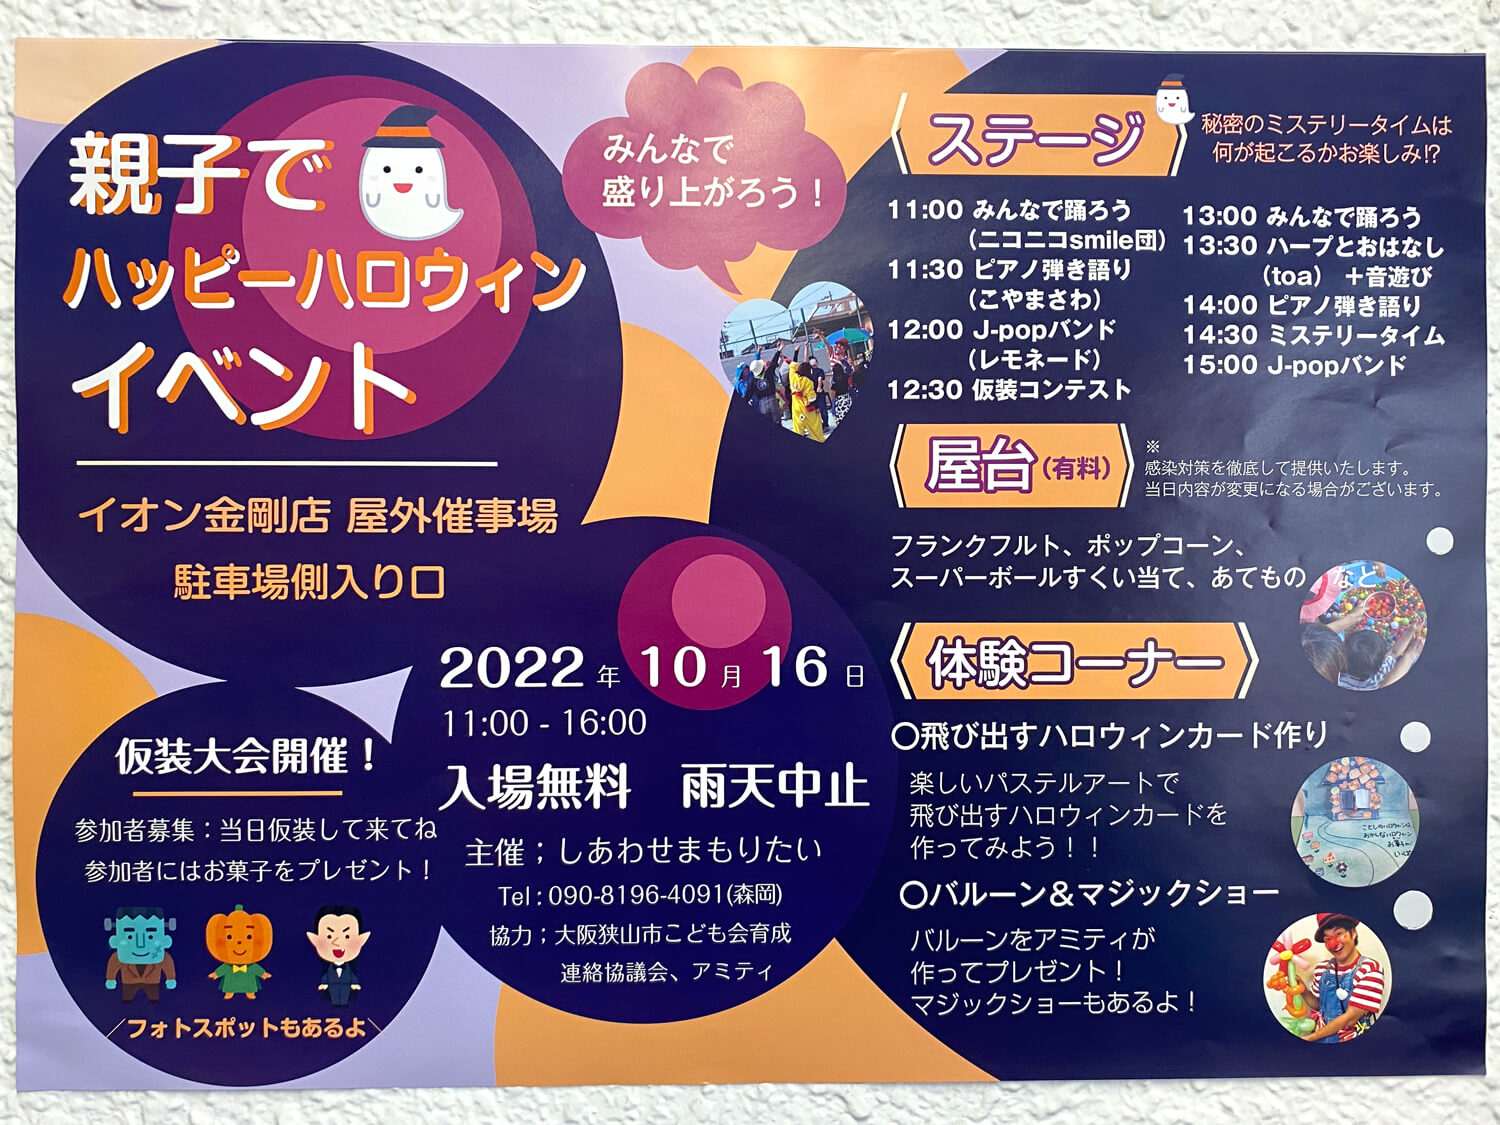 【2022年10月16日】「親子でハッピーハロウィンイベント」がイオン金剛店で開催 (1)